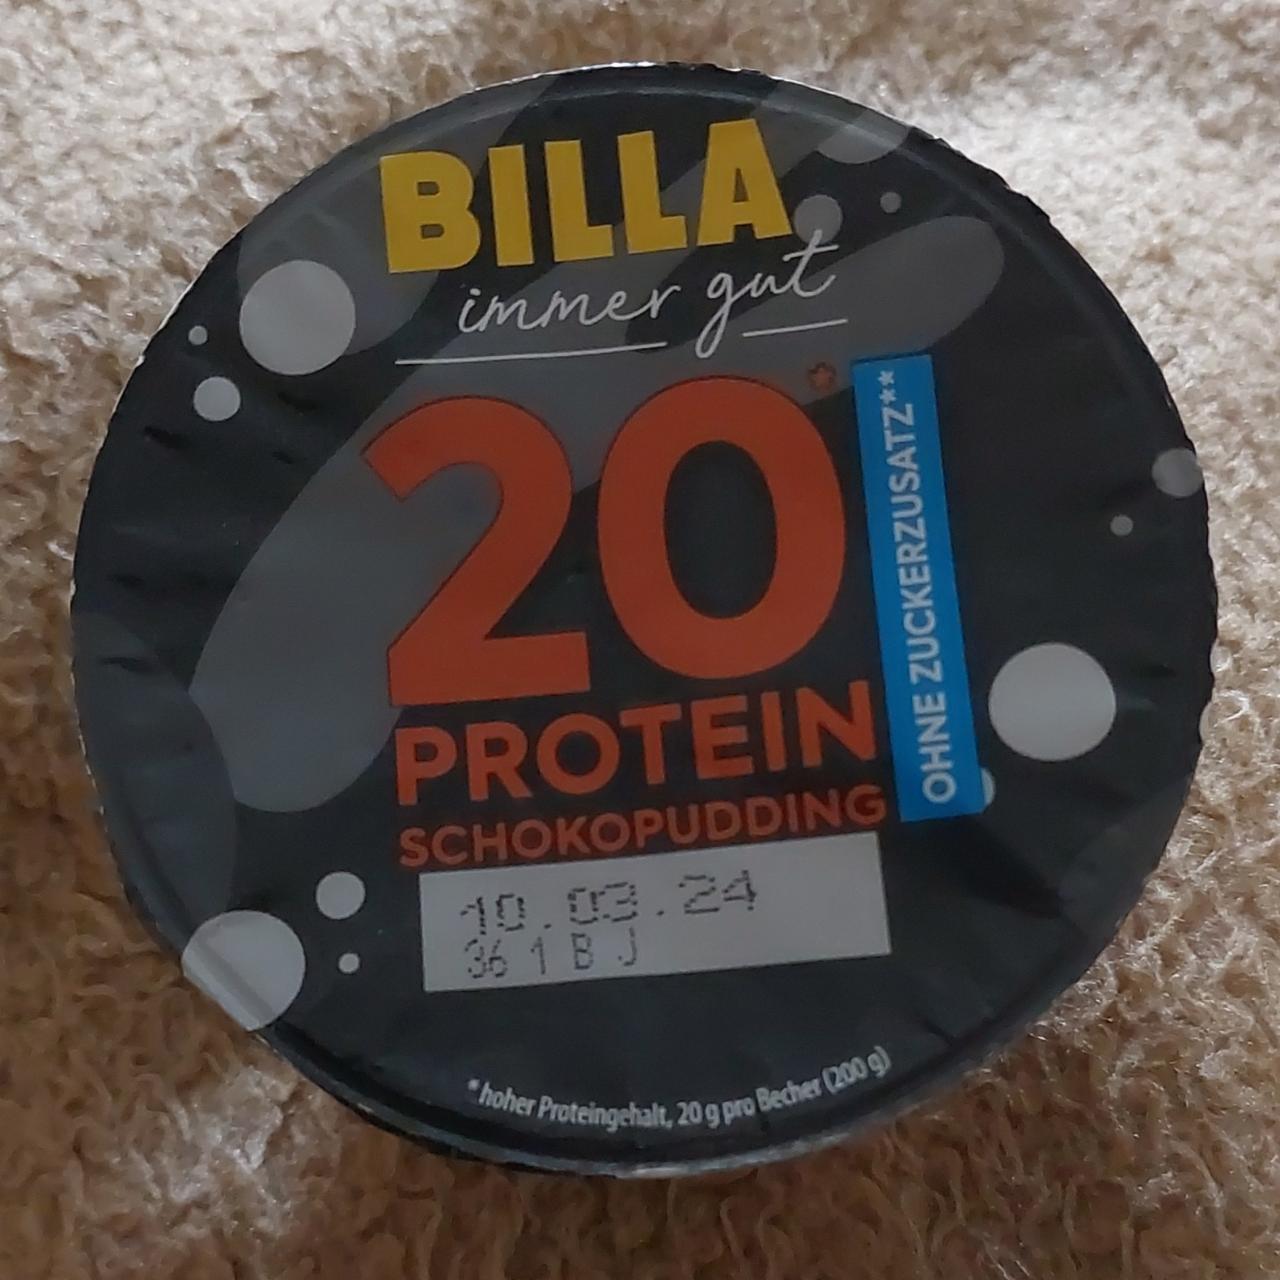 Képek - 20 proteinschokopudding Billa